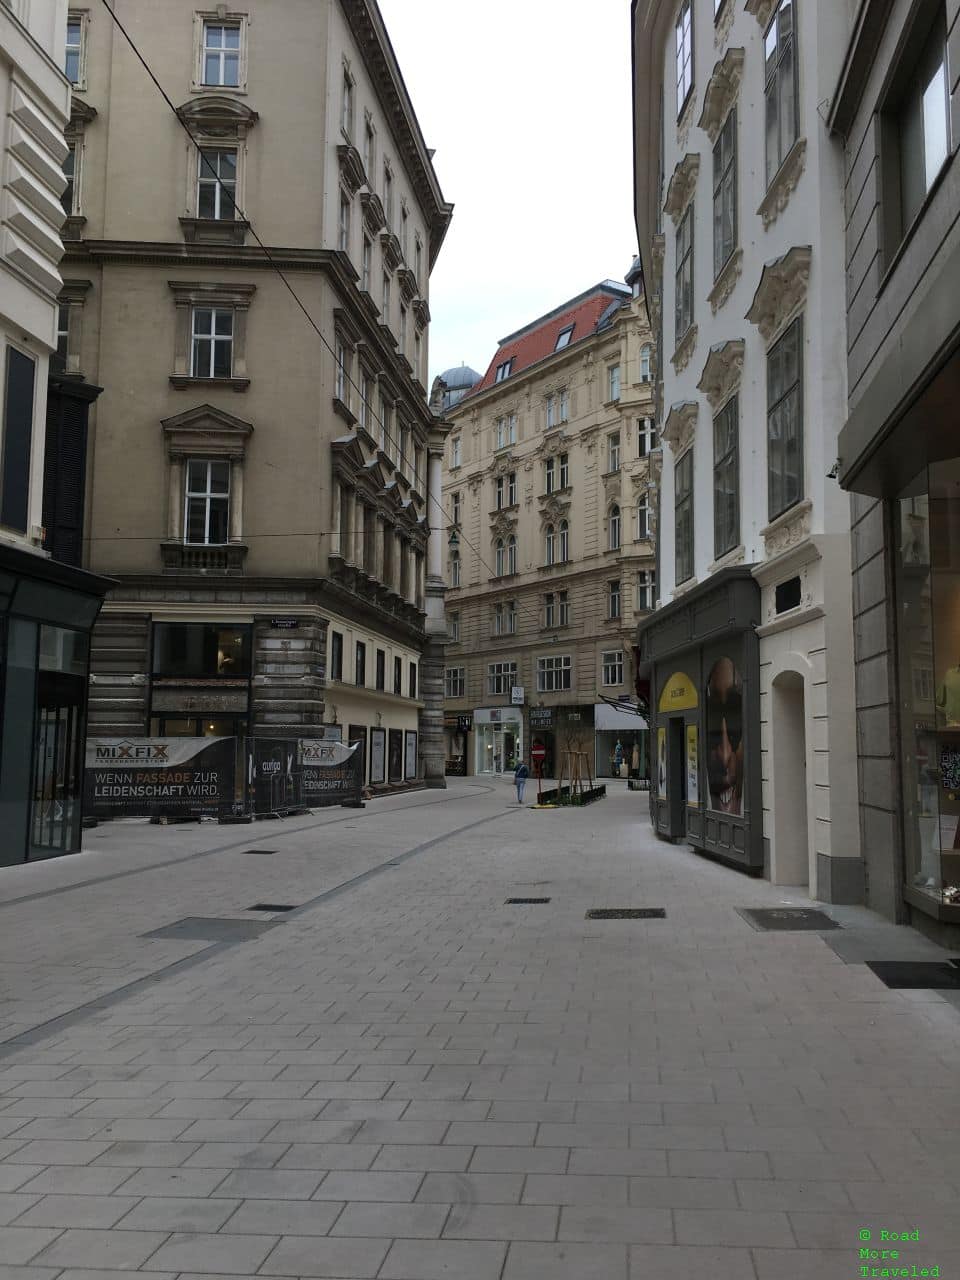 Innere Stadt of Vienna on Sunday morning